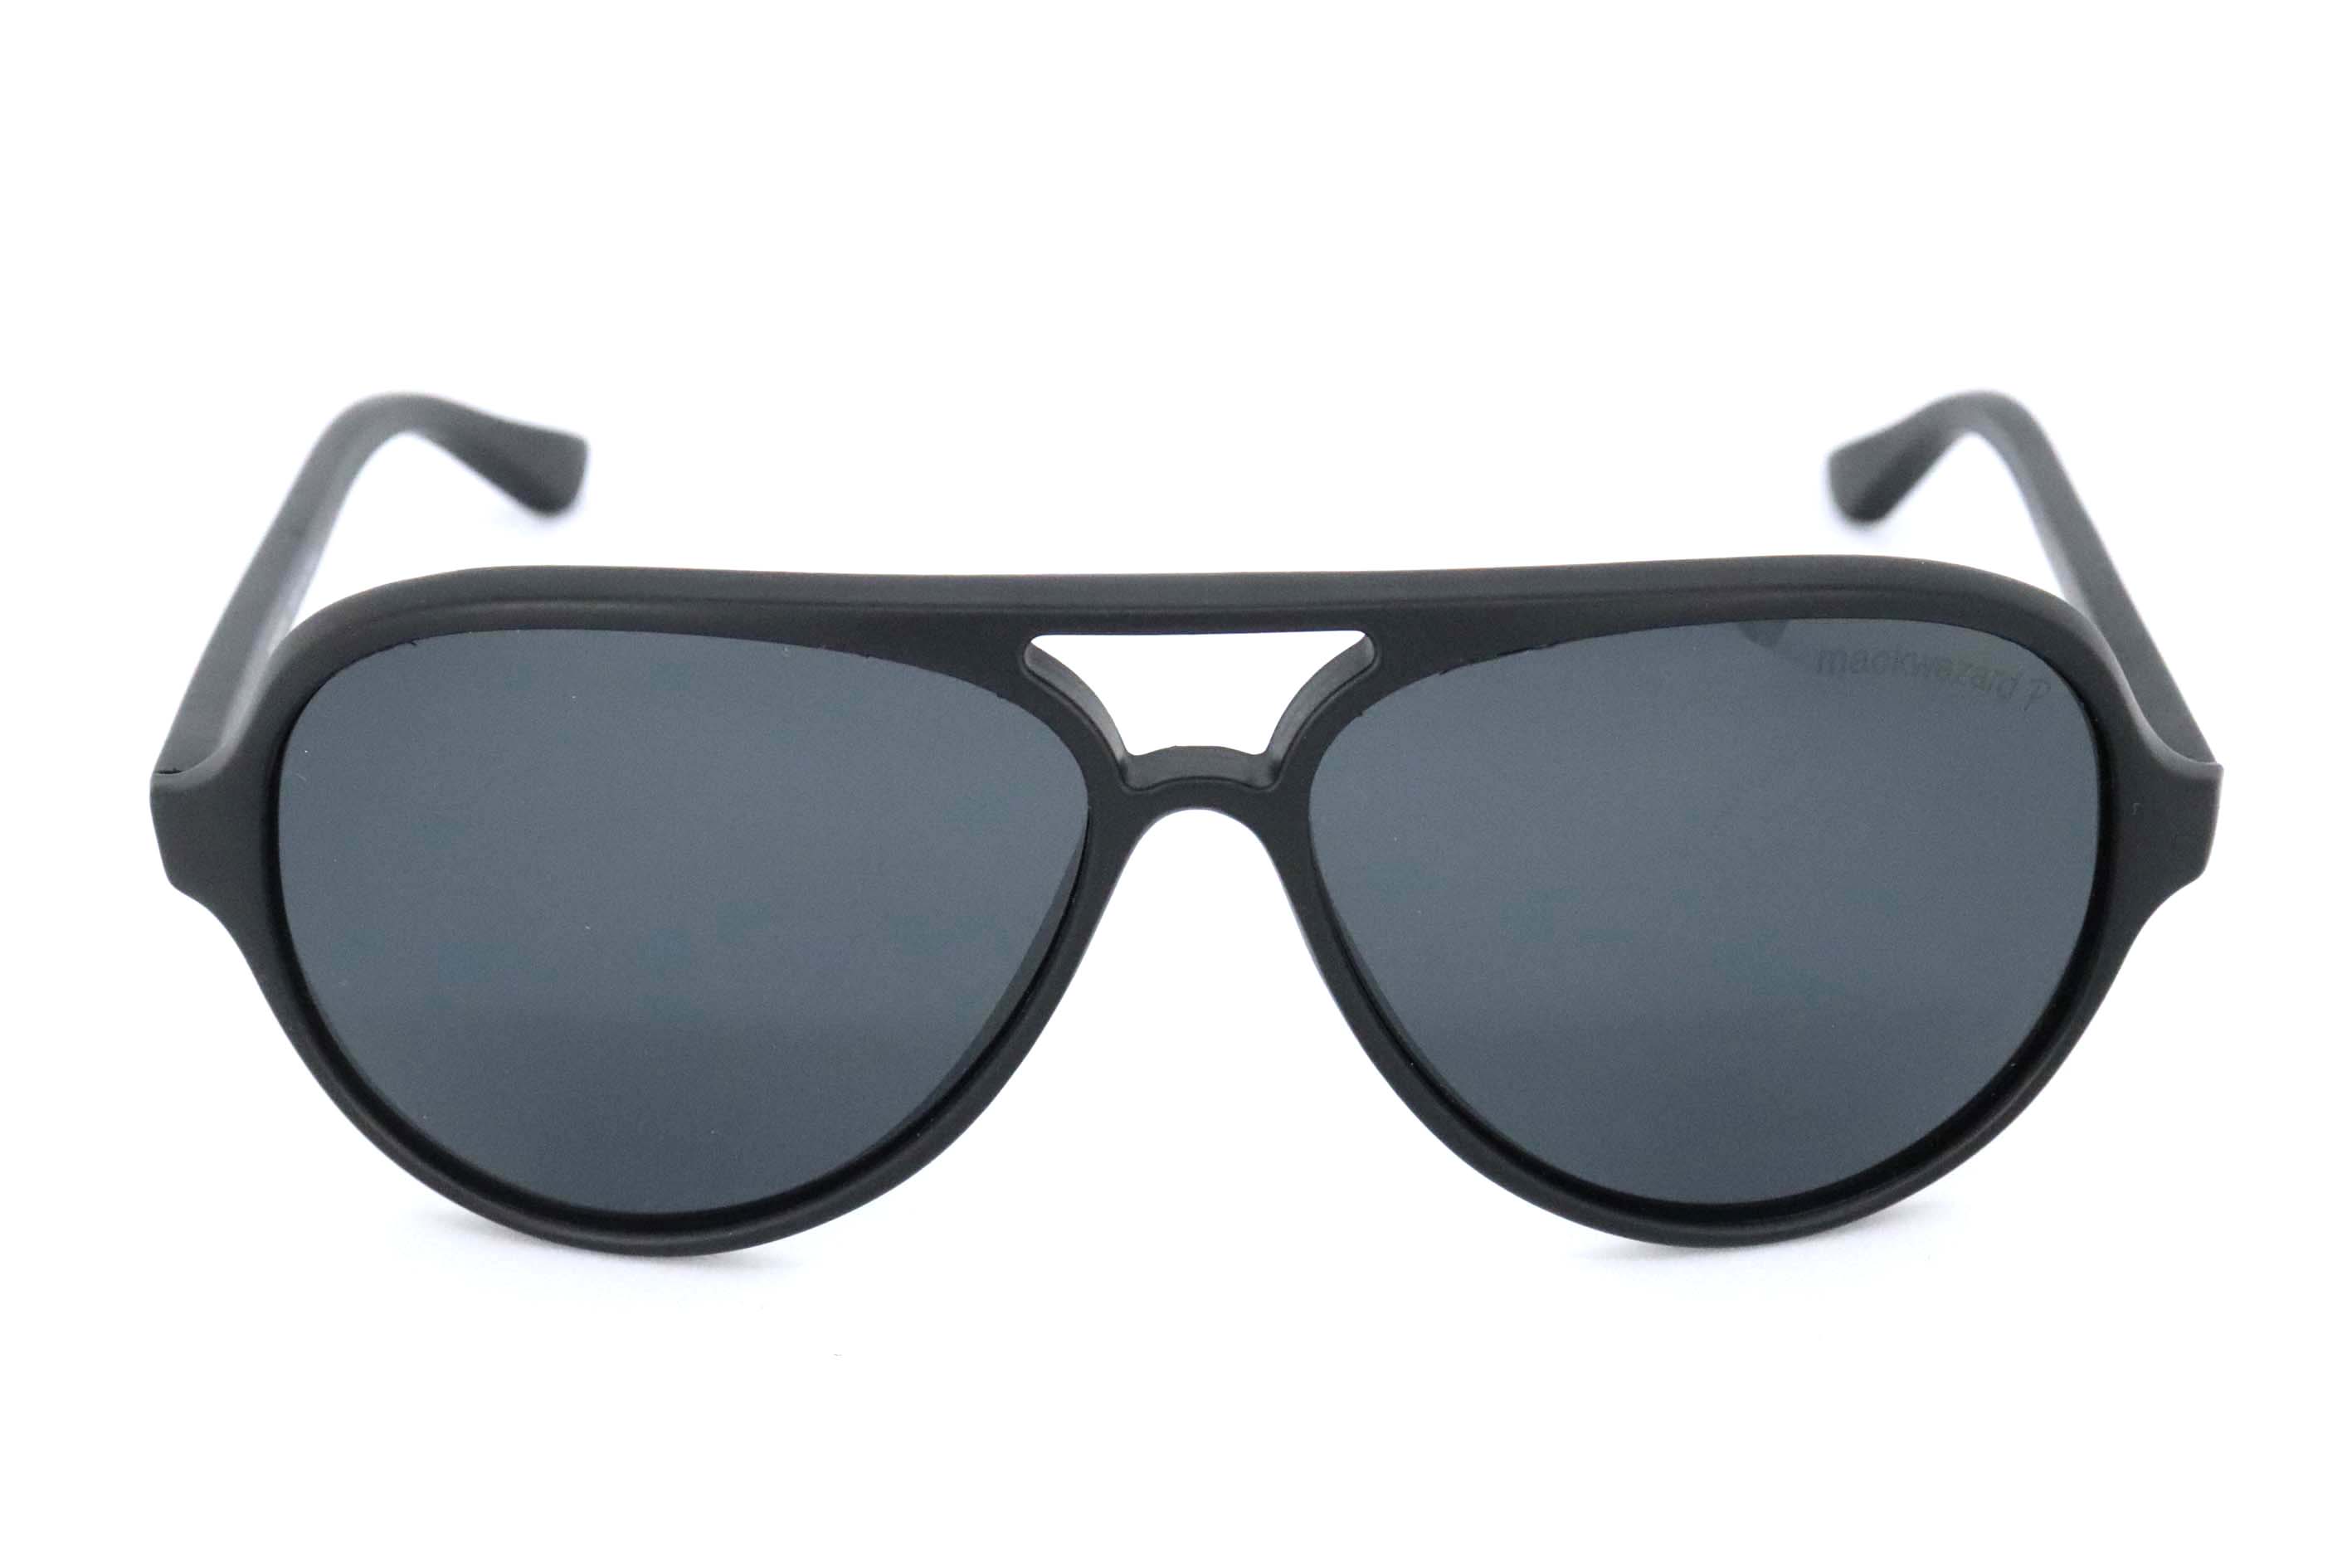 MackWezard Sunglasses -4125-c2-58-15-140